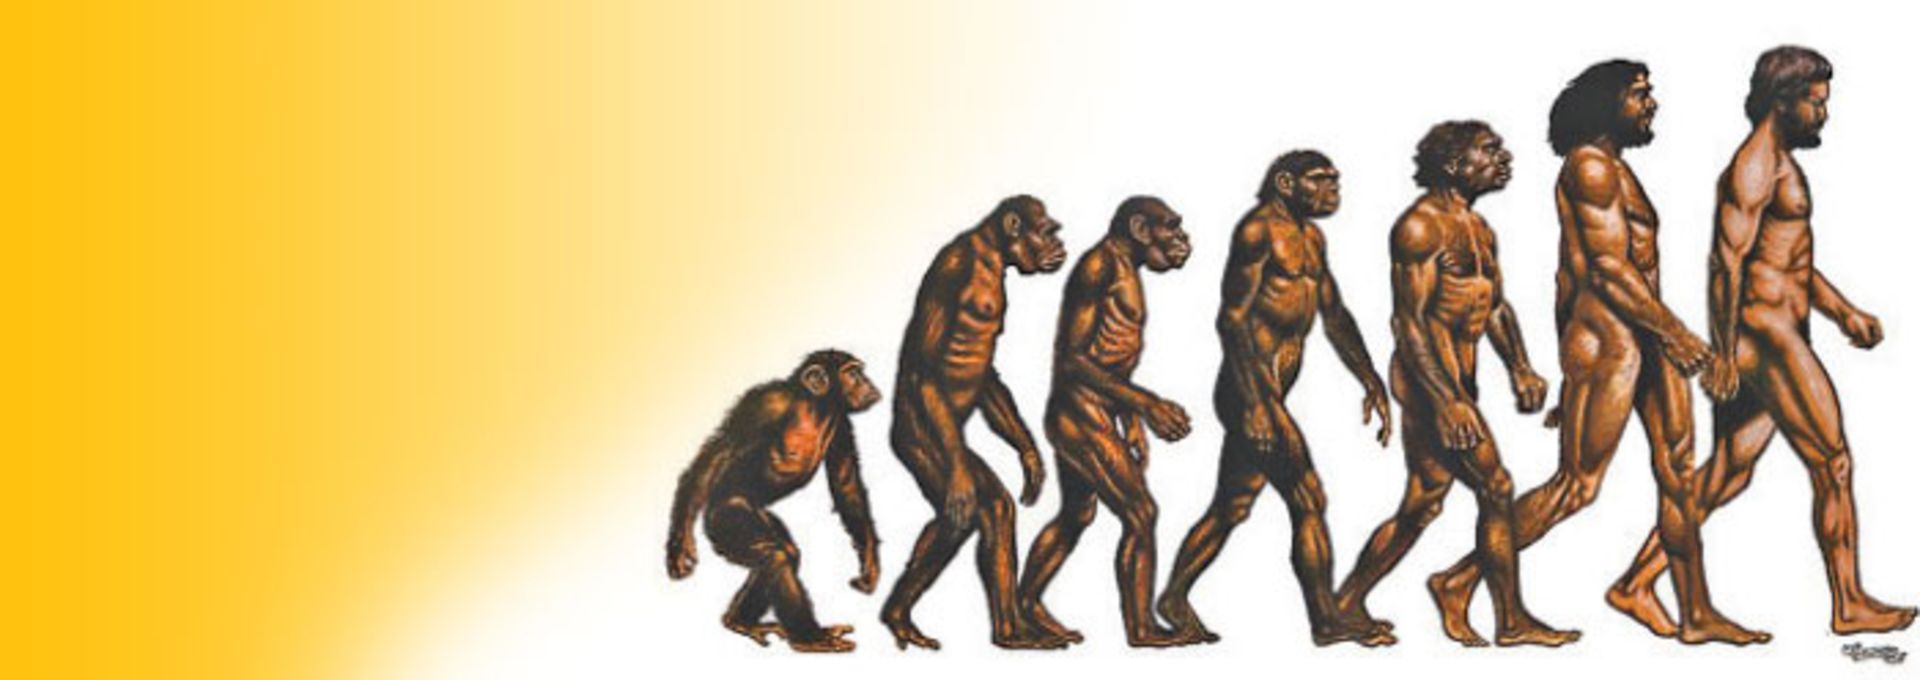 مرجع متخصصين ايران تكامل انسان / human evolution